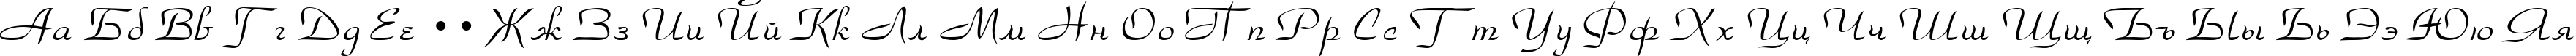 Пример написания русского алфавита шрифтом Park Avenue Normal